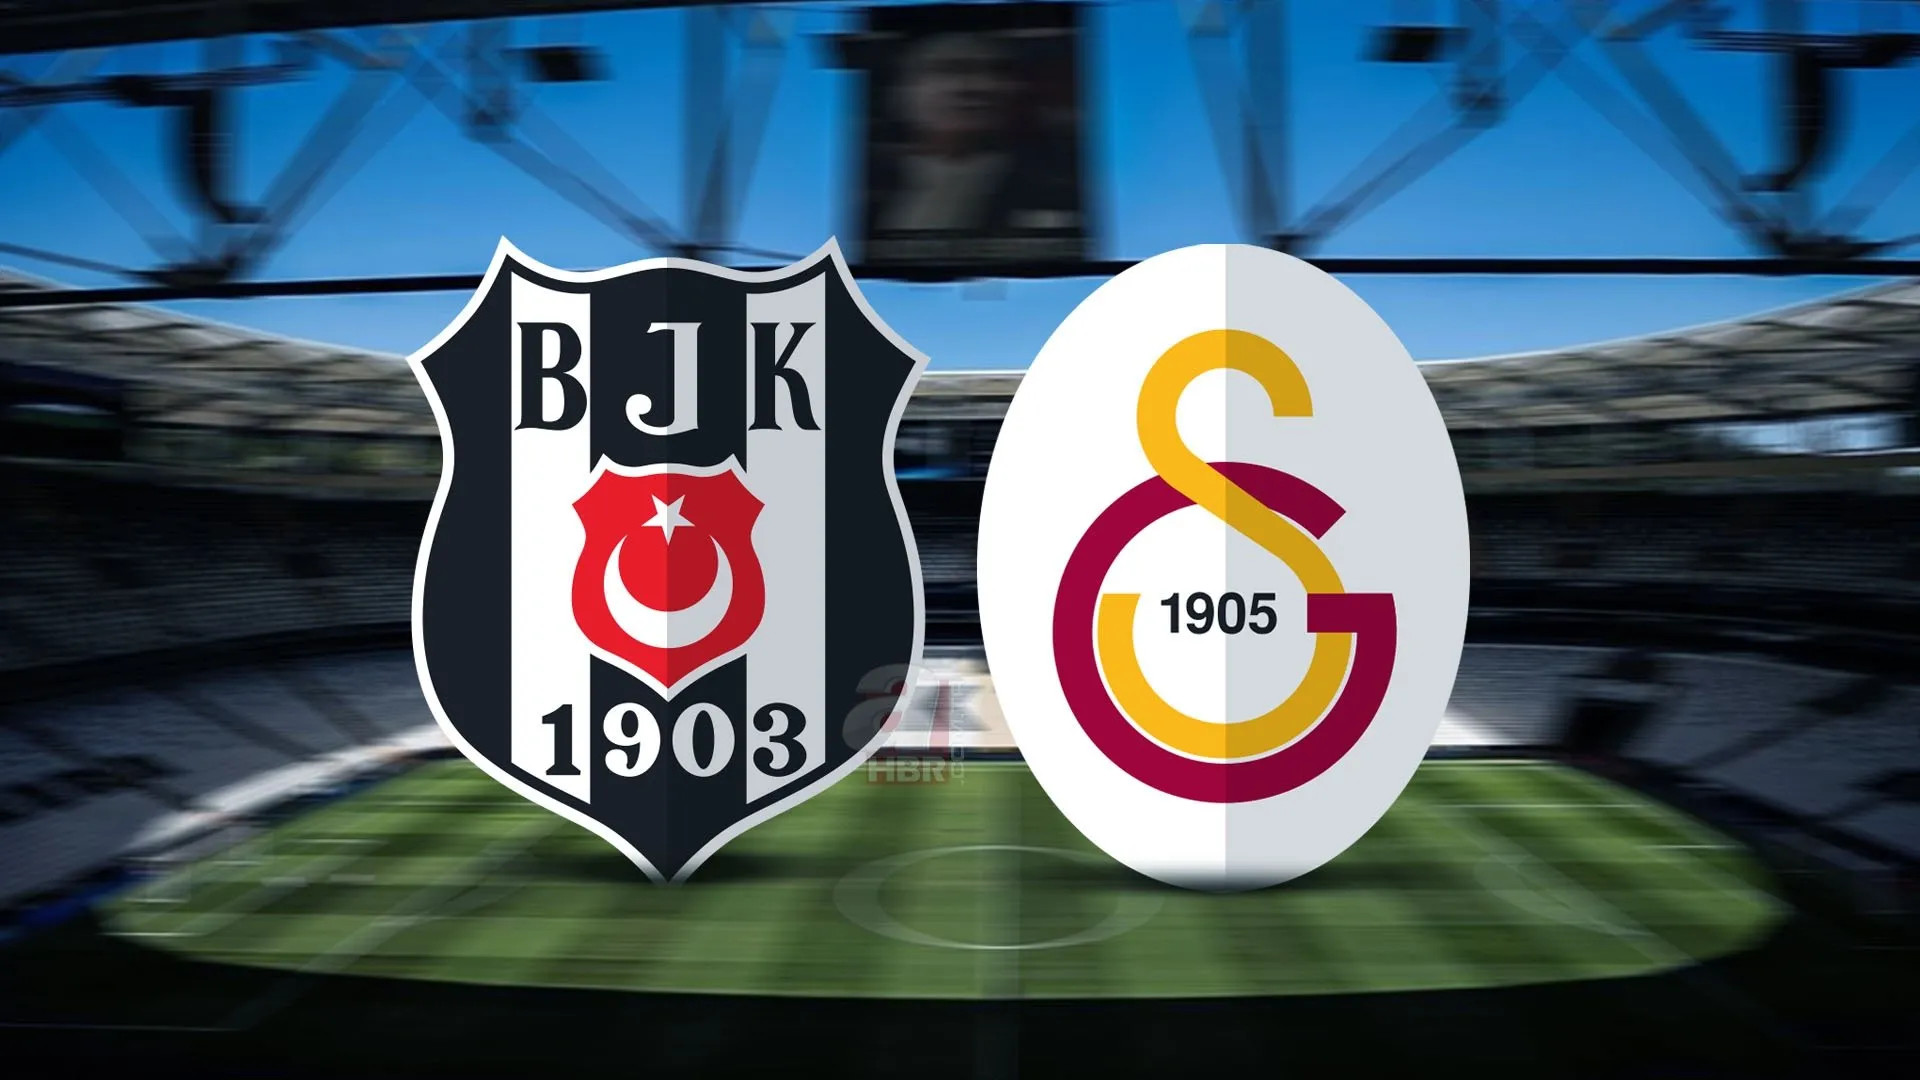 Beşiktaş - Galatasaray derbisinin tüm biletleri tükendi!